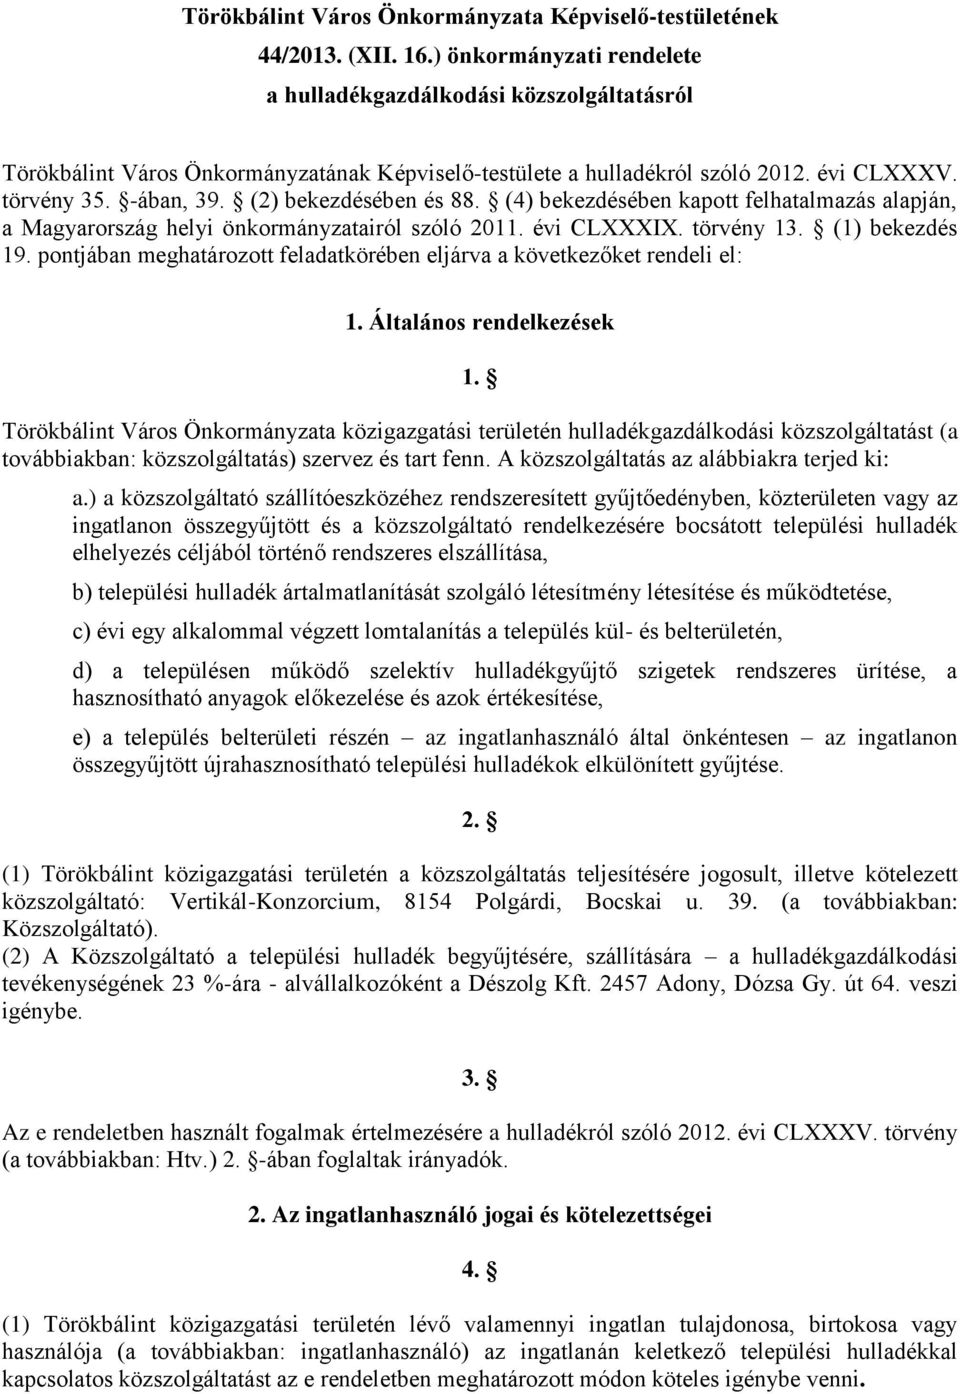 (2) bekezdésében és 88. (4) bekezdésében kapott felhatalmazás alapján, a Magyarország helyi önkormányzatairól szóló 2011. évi CLXXXIX. törvény 13. (1) bekezdés 19.